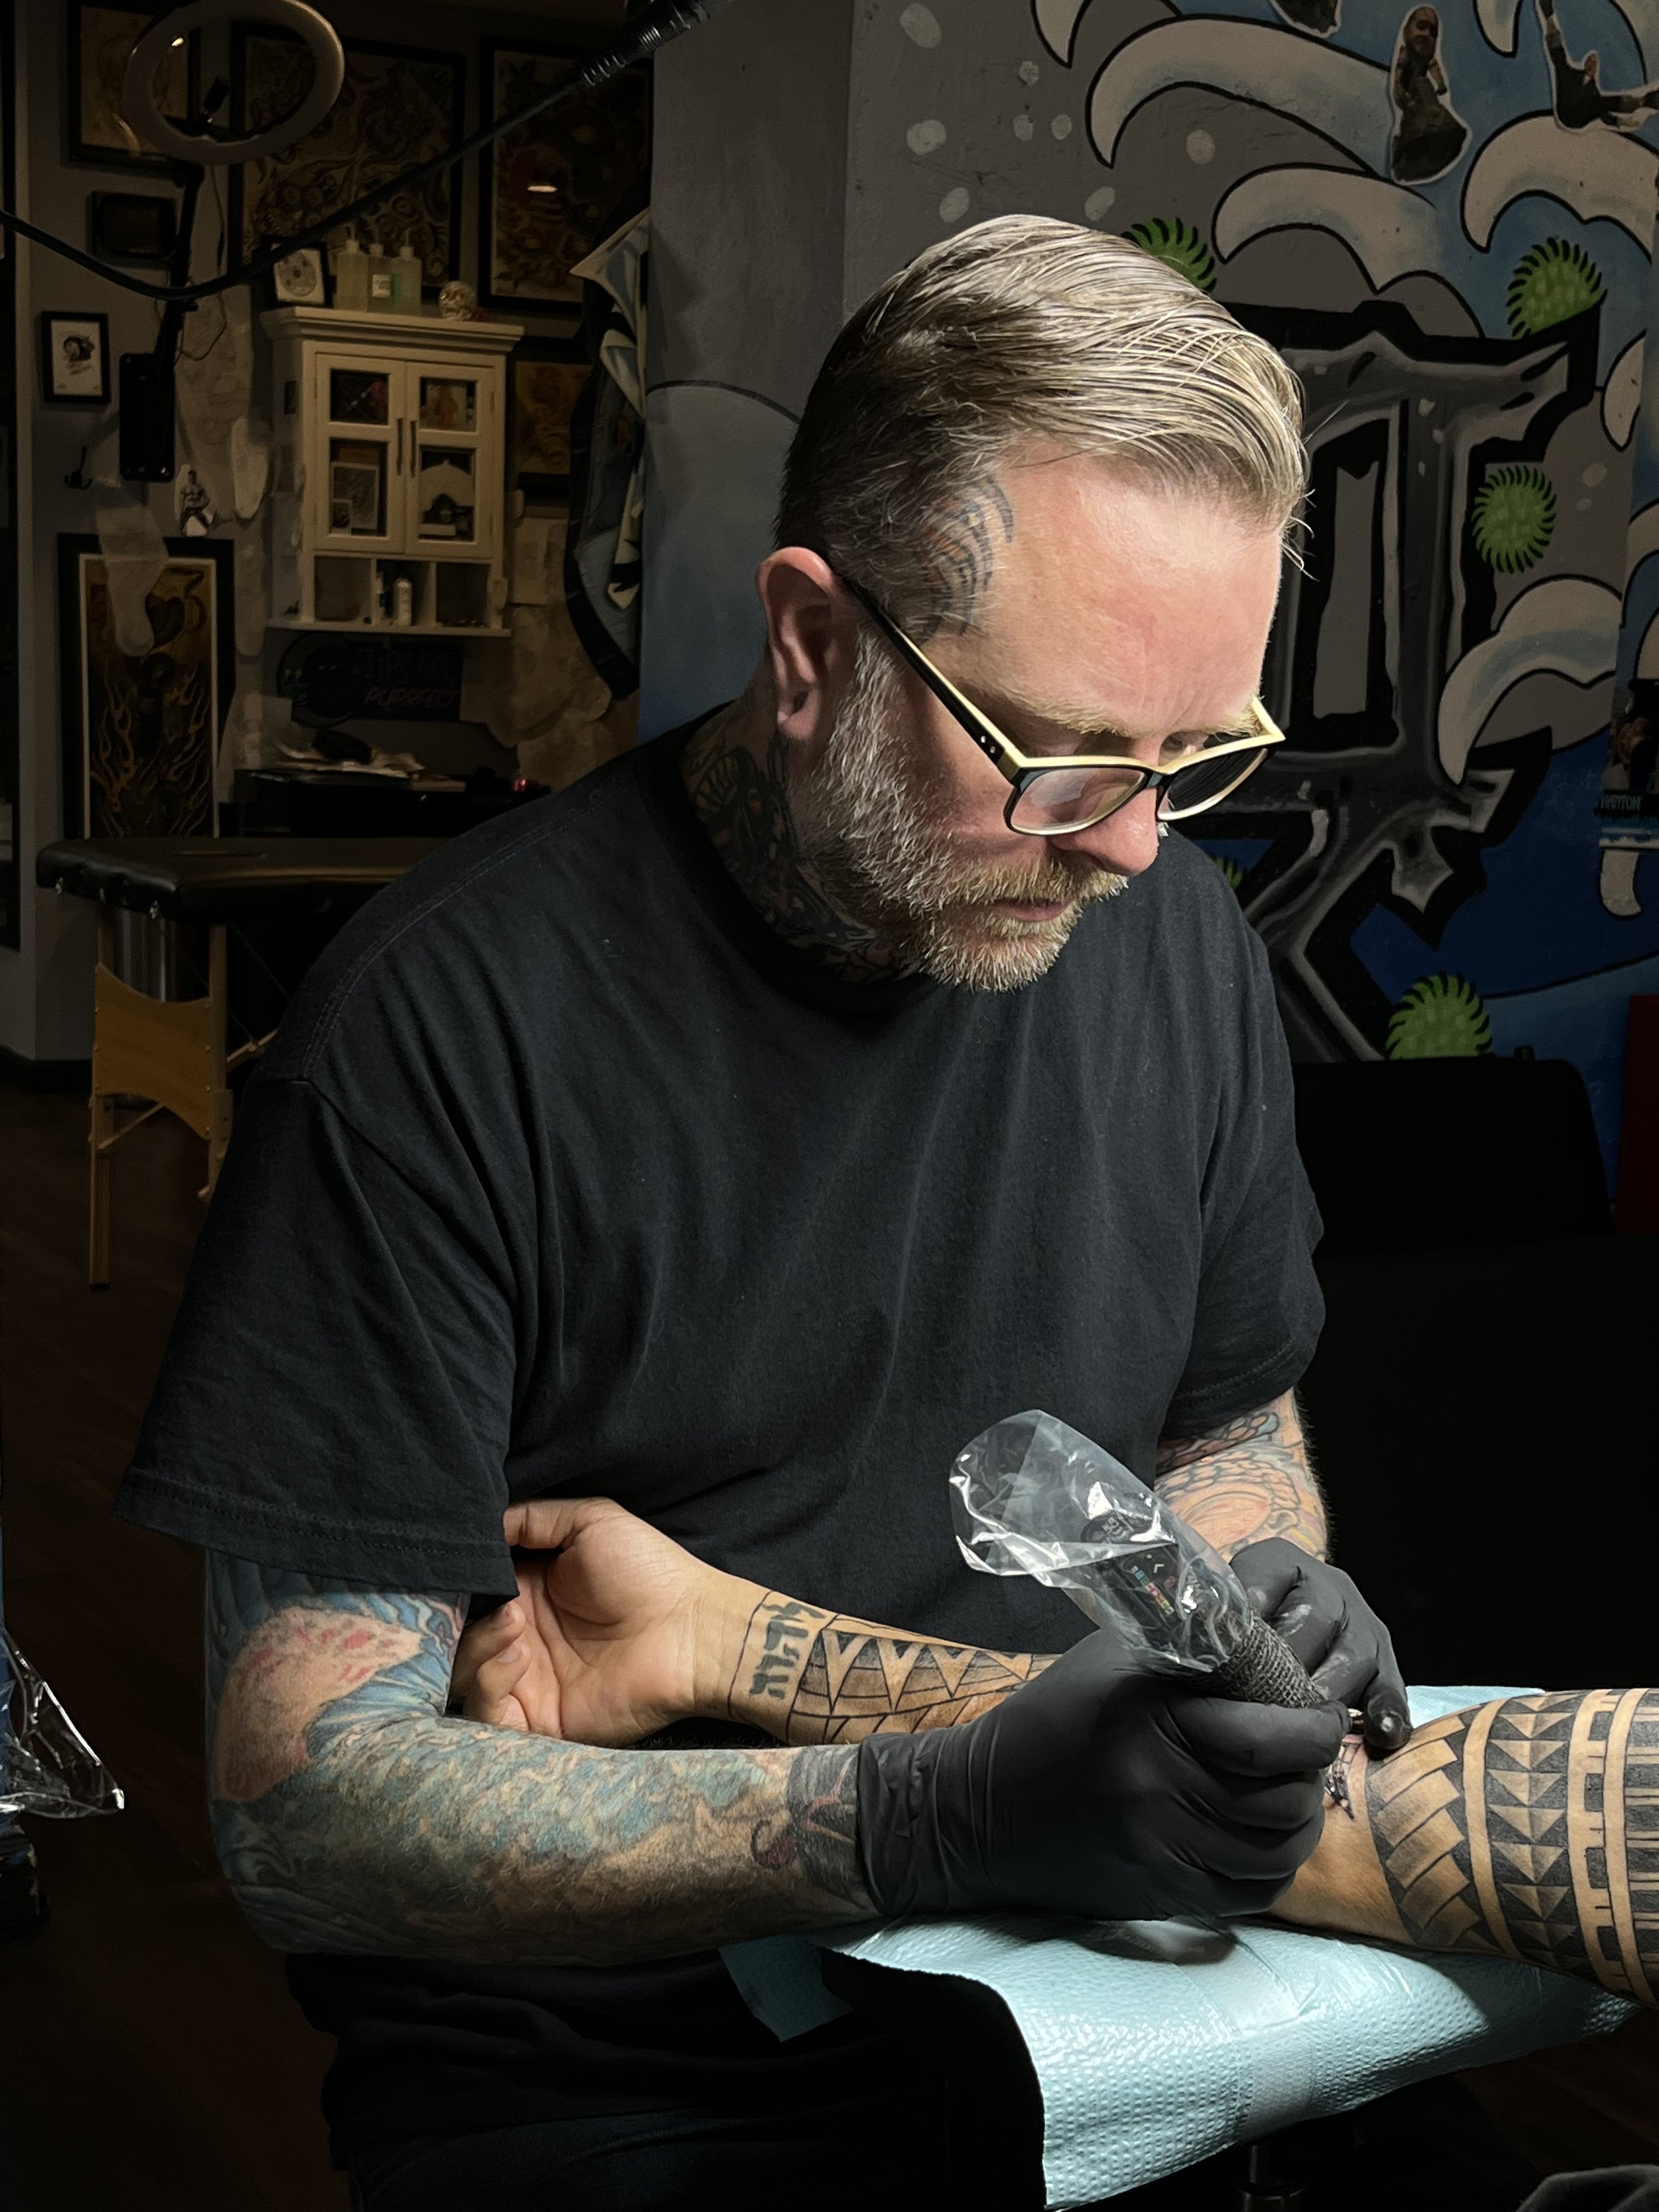 Mike Tattoo Artist on X: 